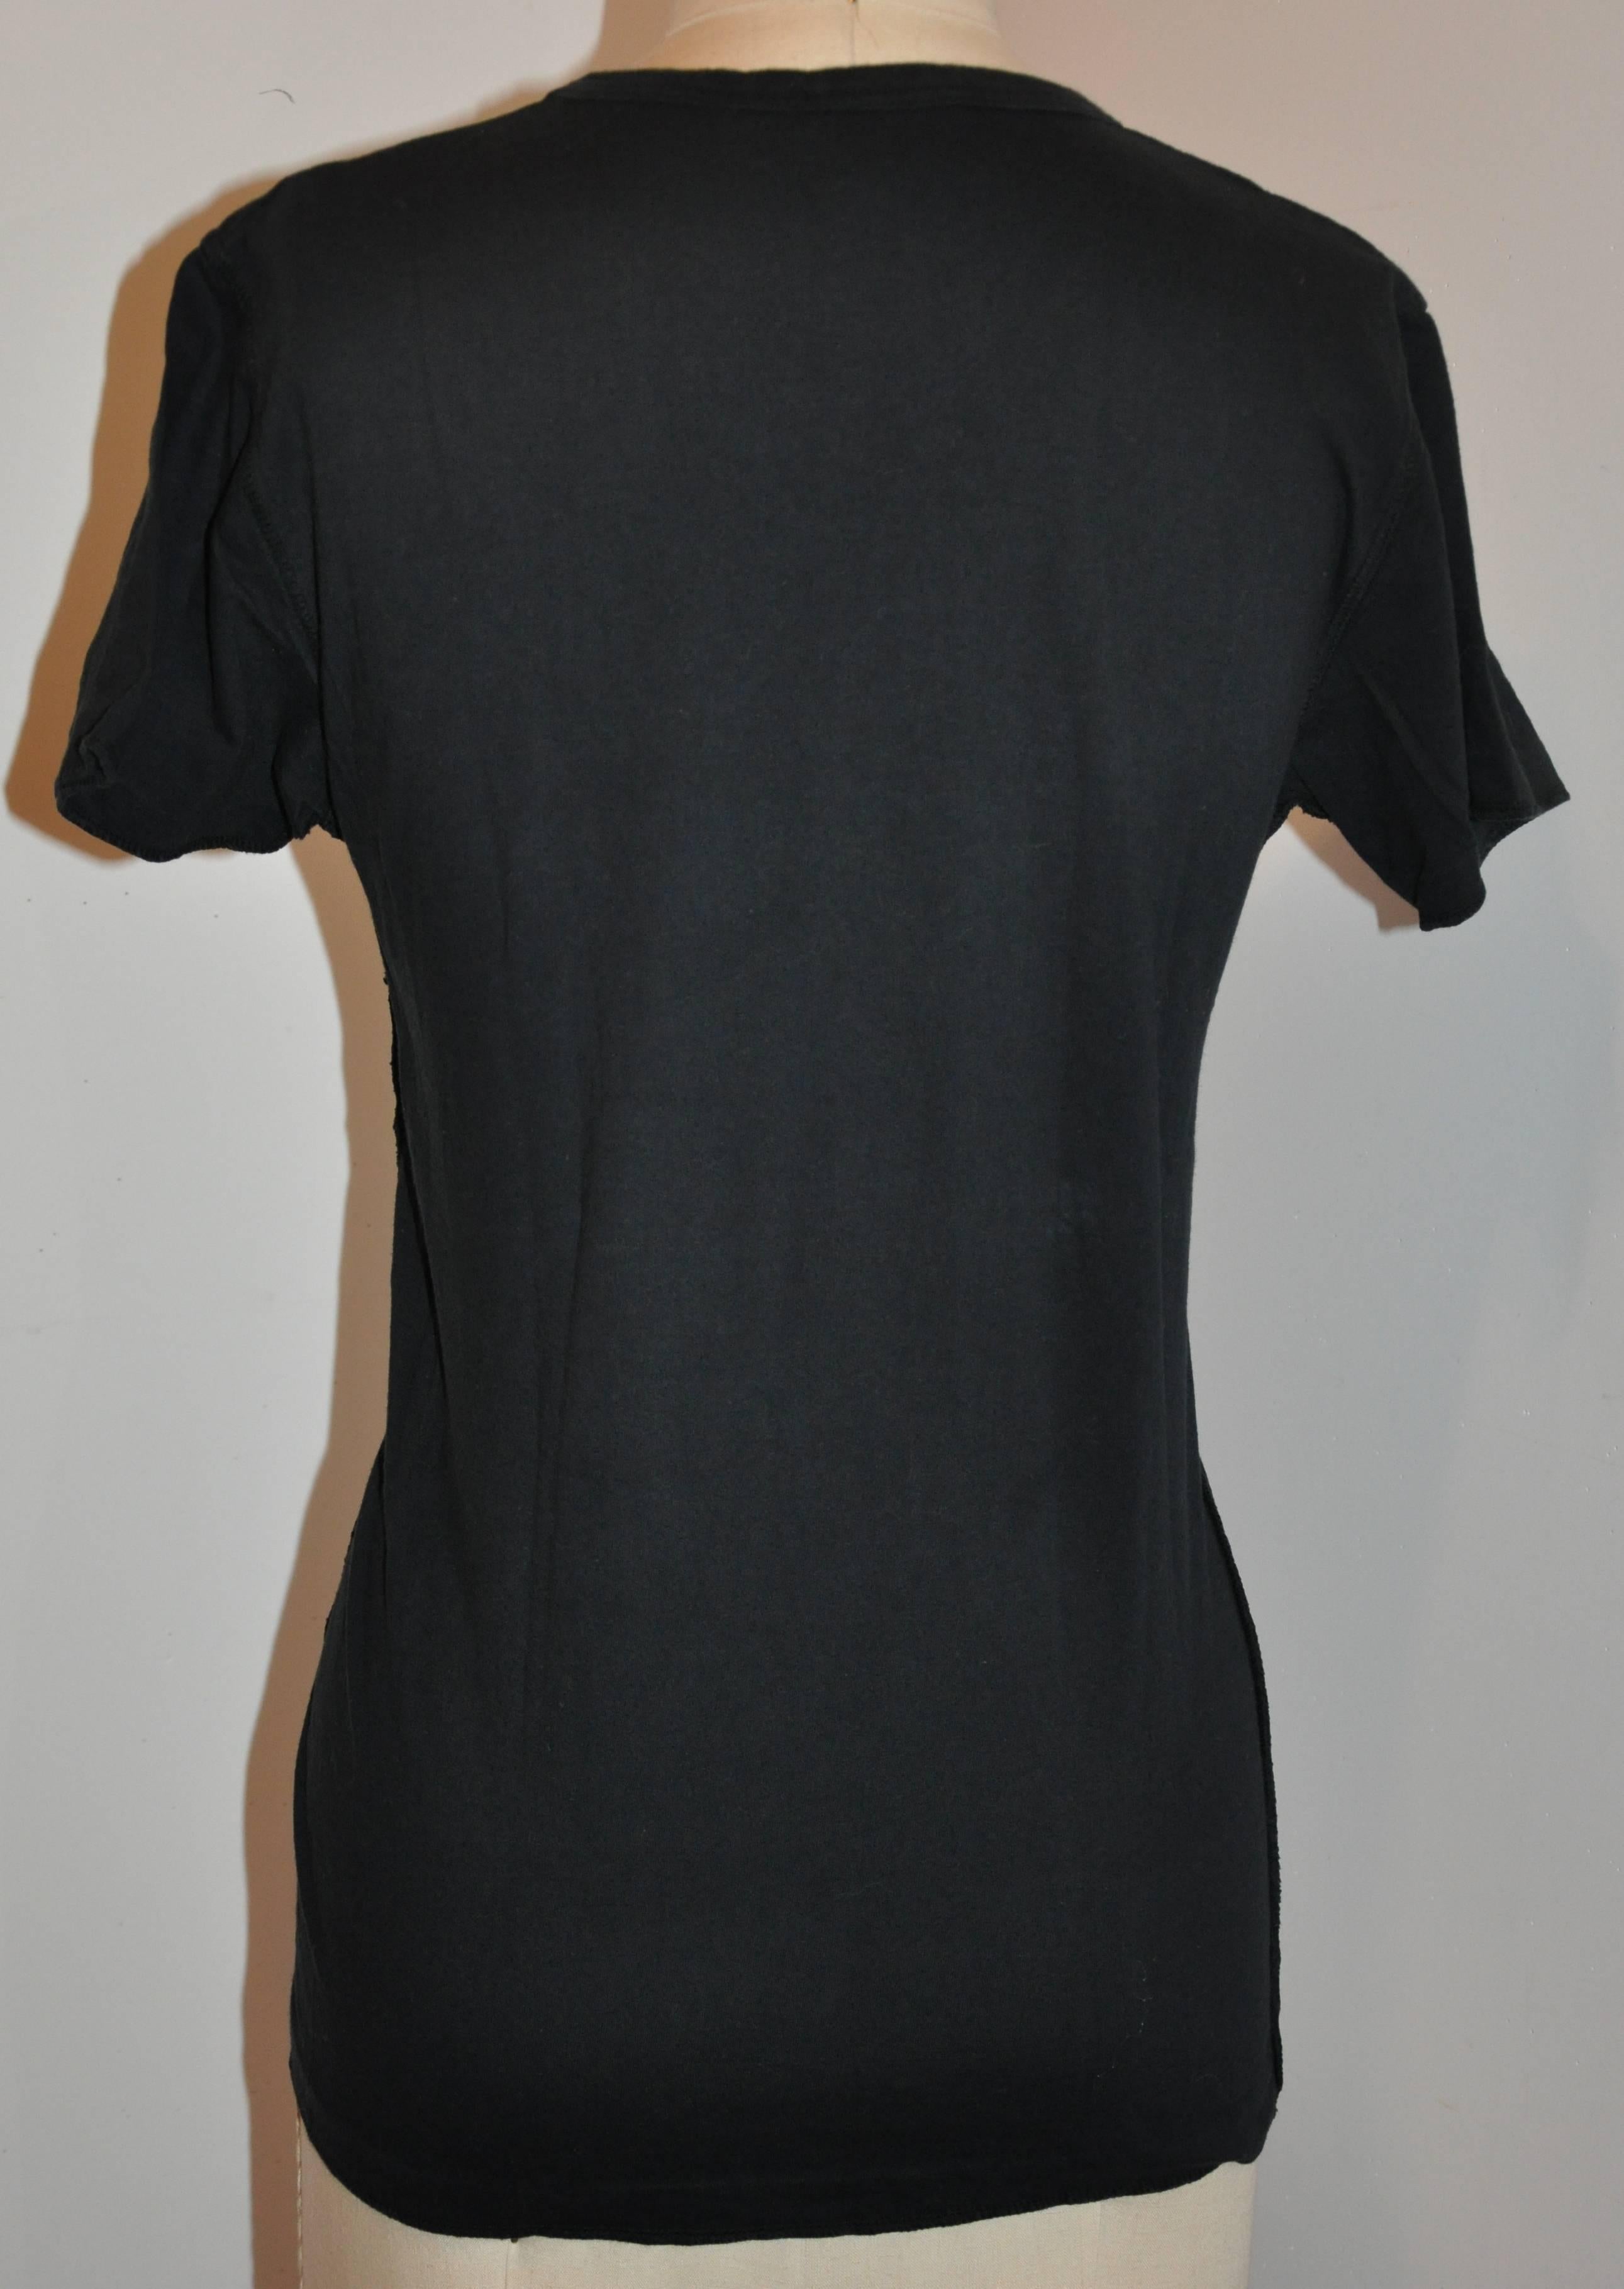           Ce tee-shirt fantaisiste en coton noir Sonia Rykiel est orné de broderies multicolores sur le devant. La longueur du devant mesure 21